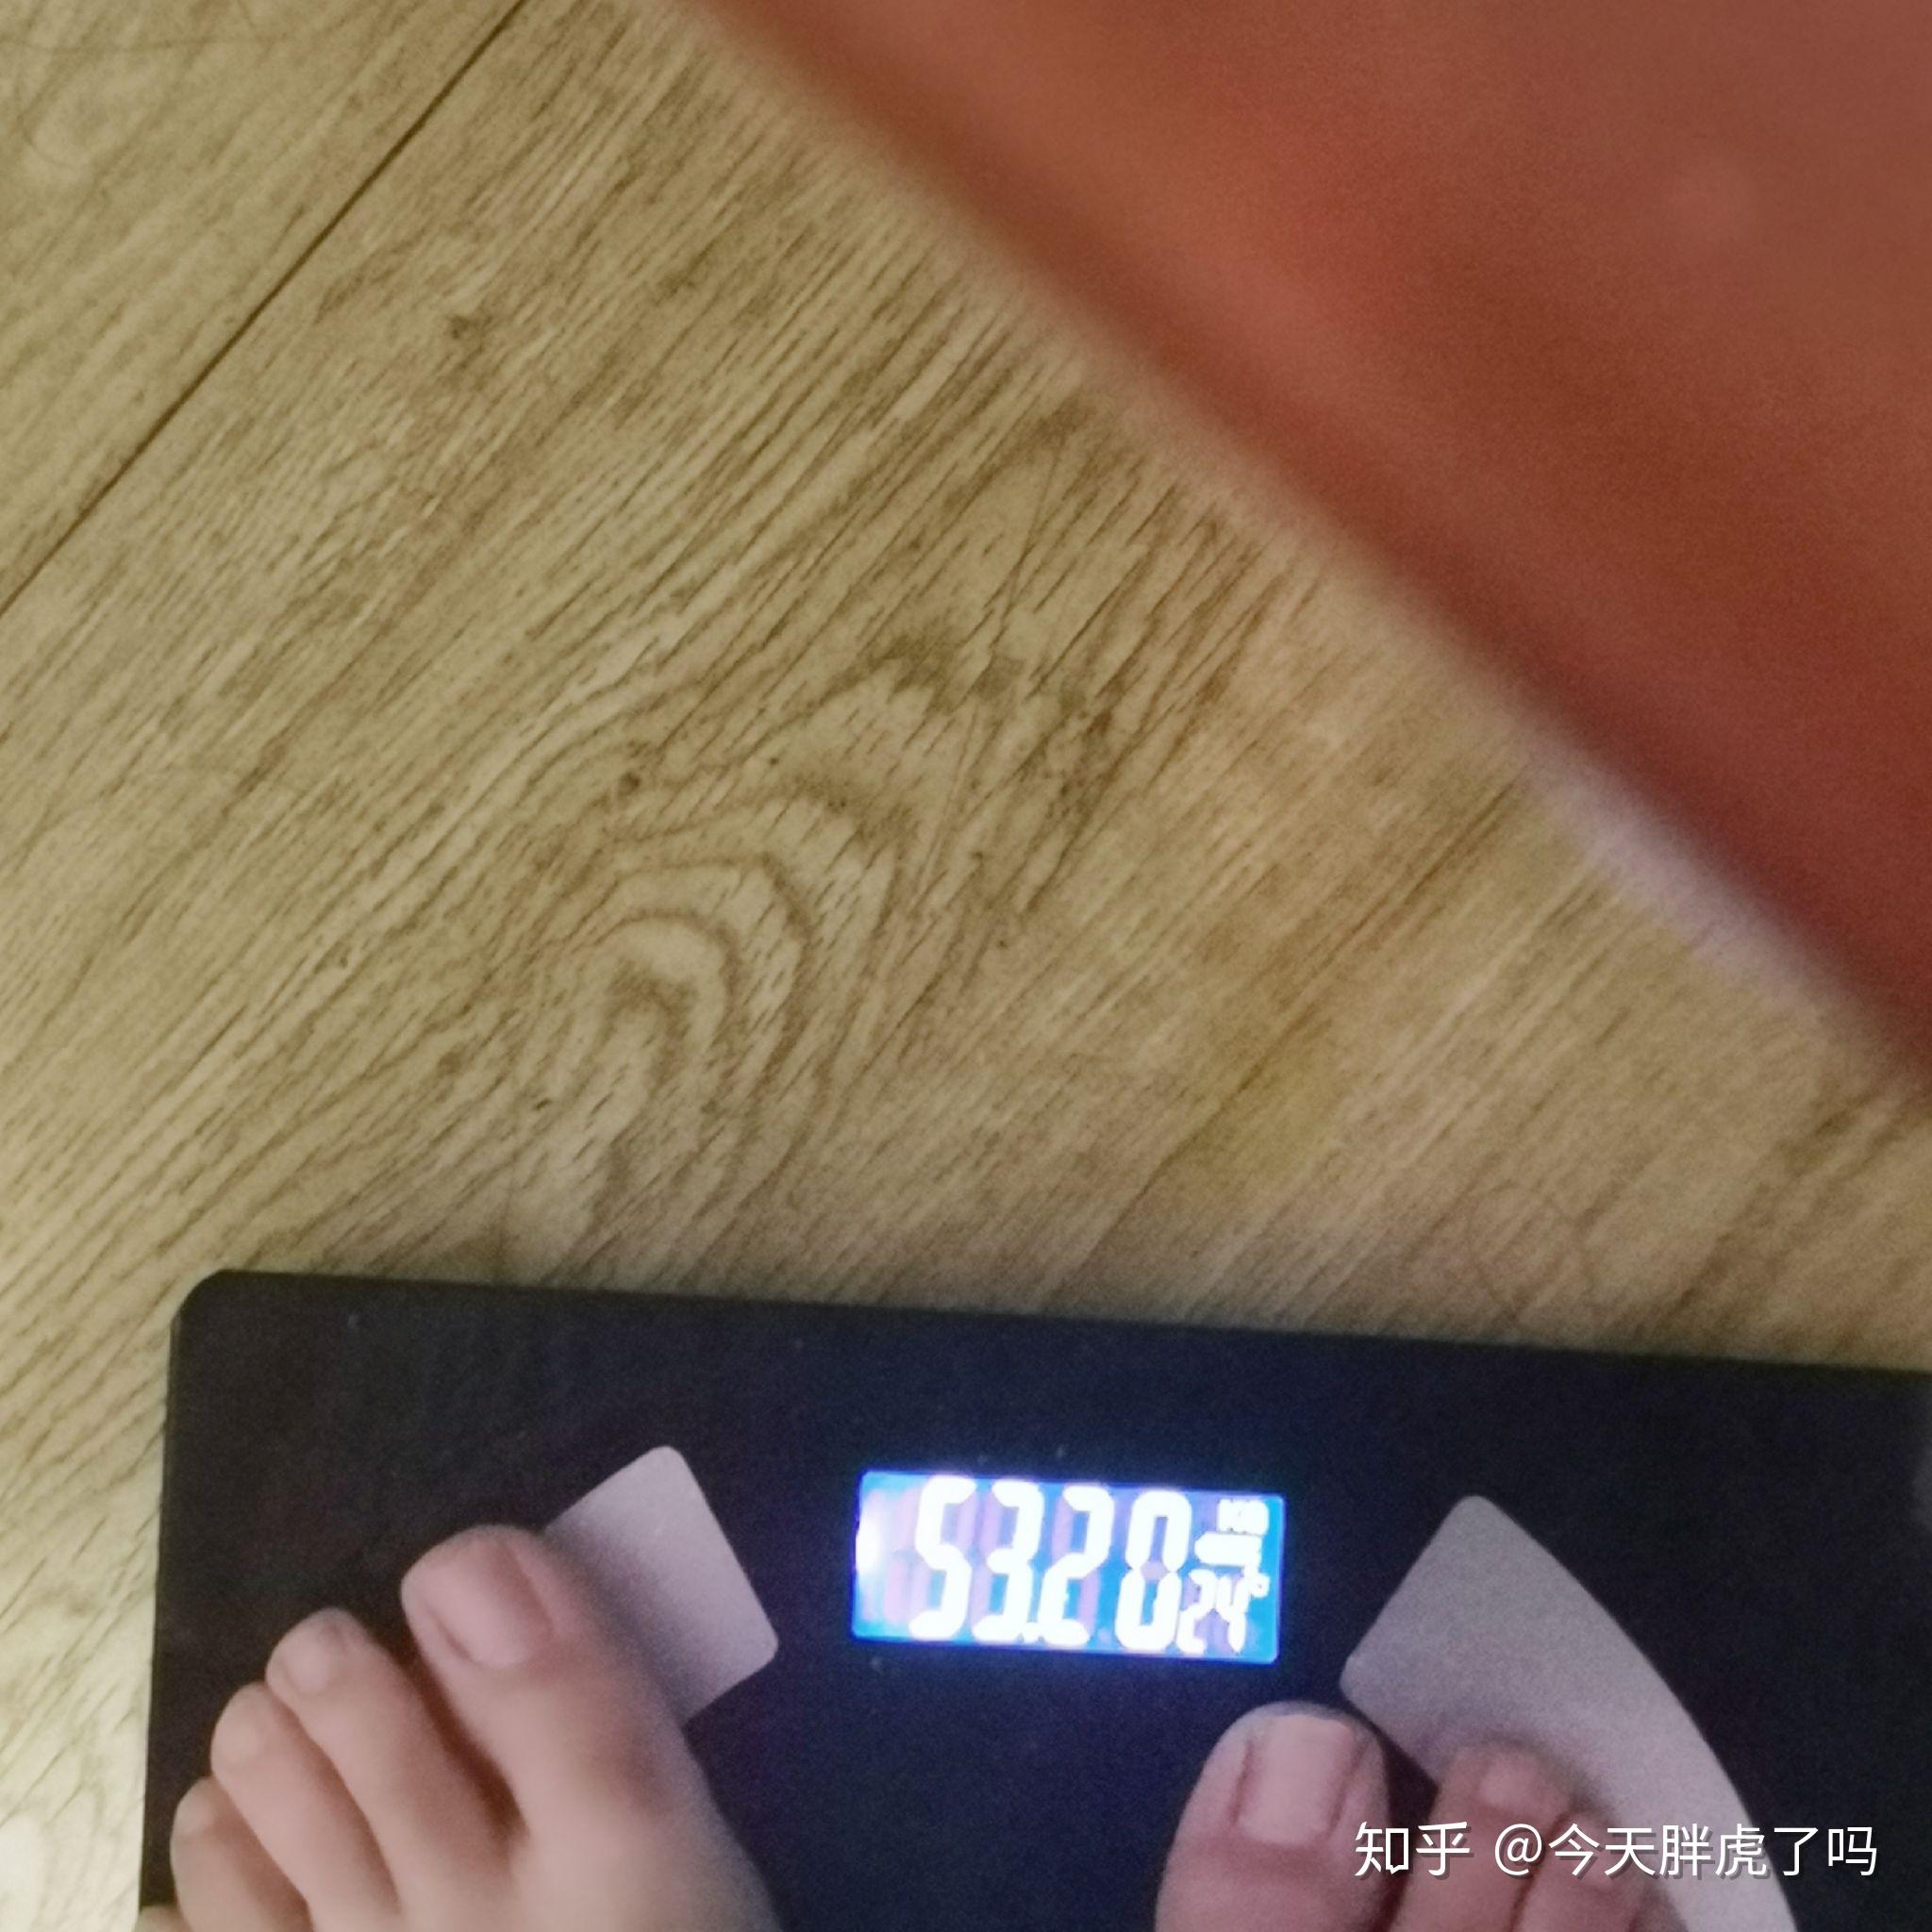 开始有点累的感觉,其他无感,现在瘦到54公斤左右,已经到我想要的体重